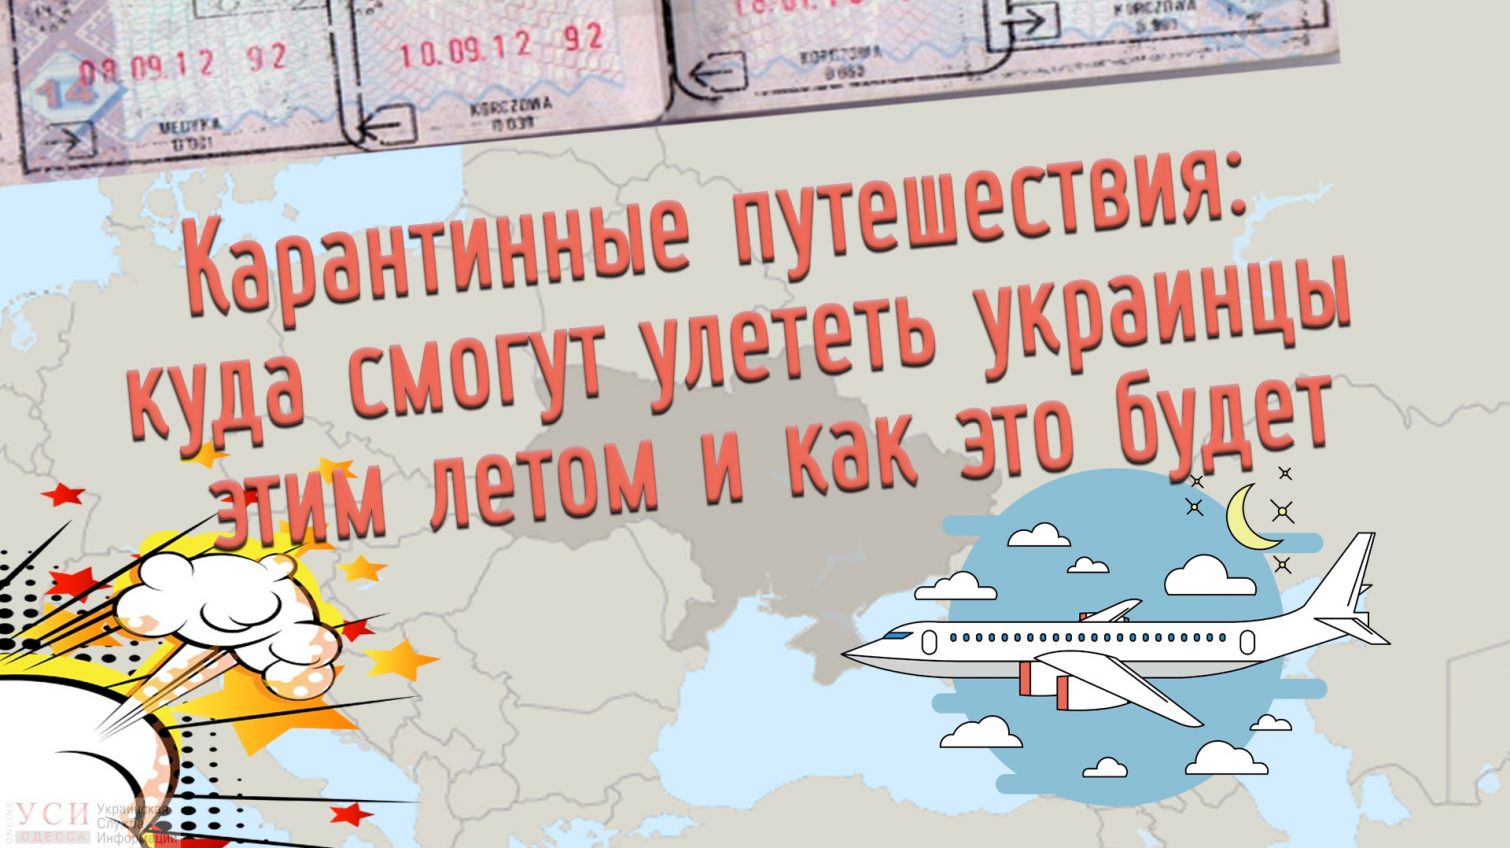 Карантинные путешествия: куда смогут улететь украинцы этим летом, и как это будет «фото»